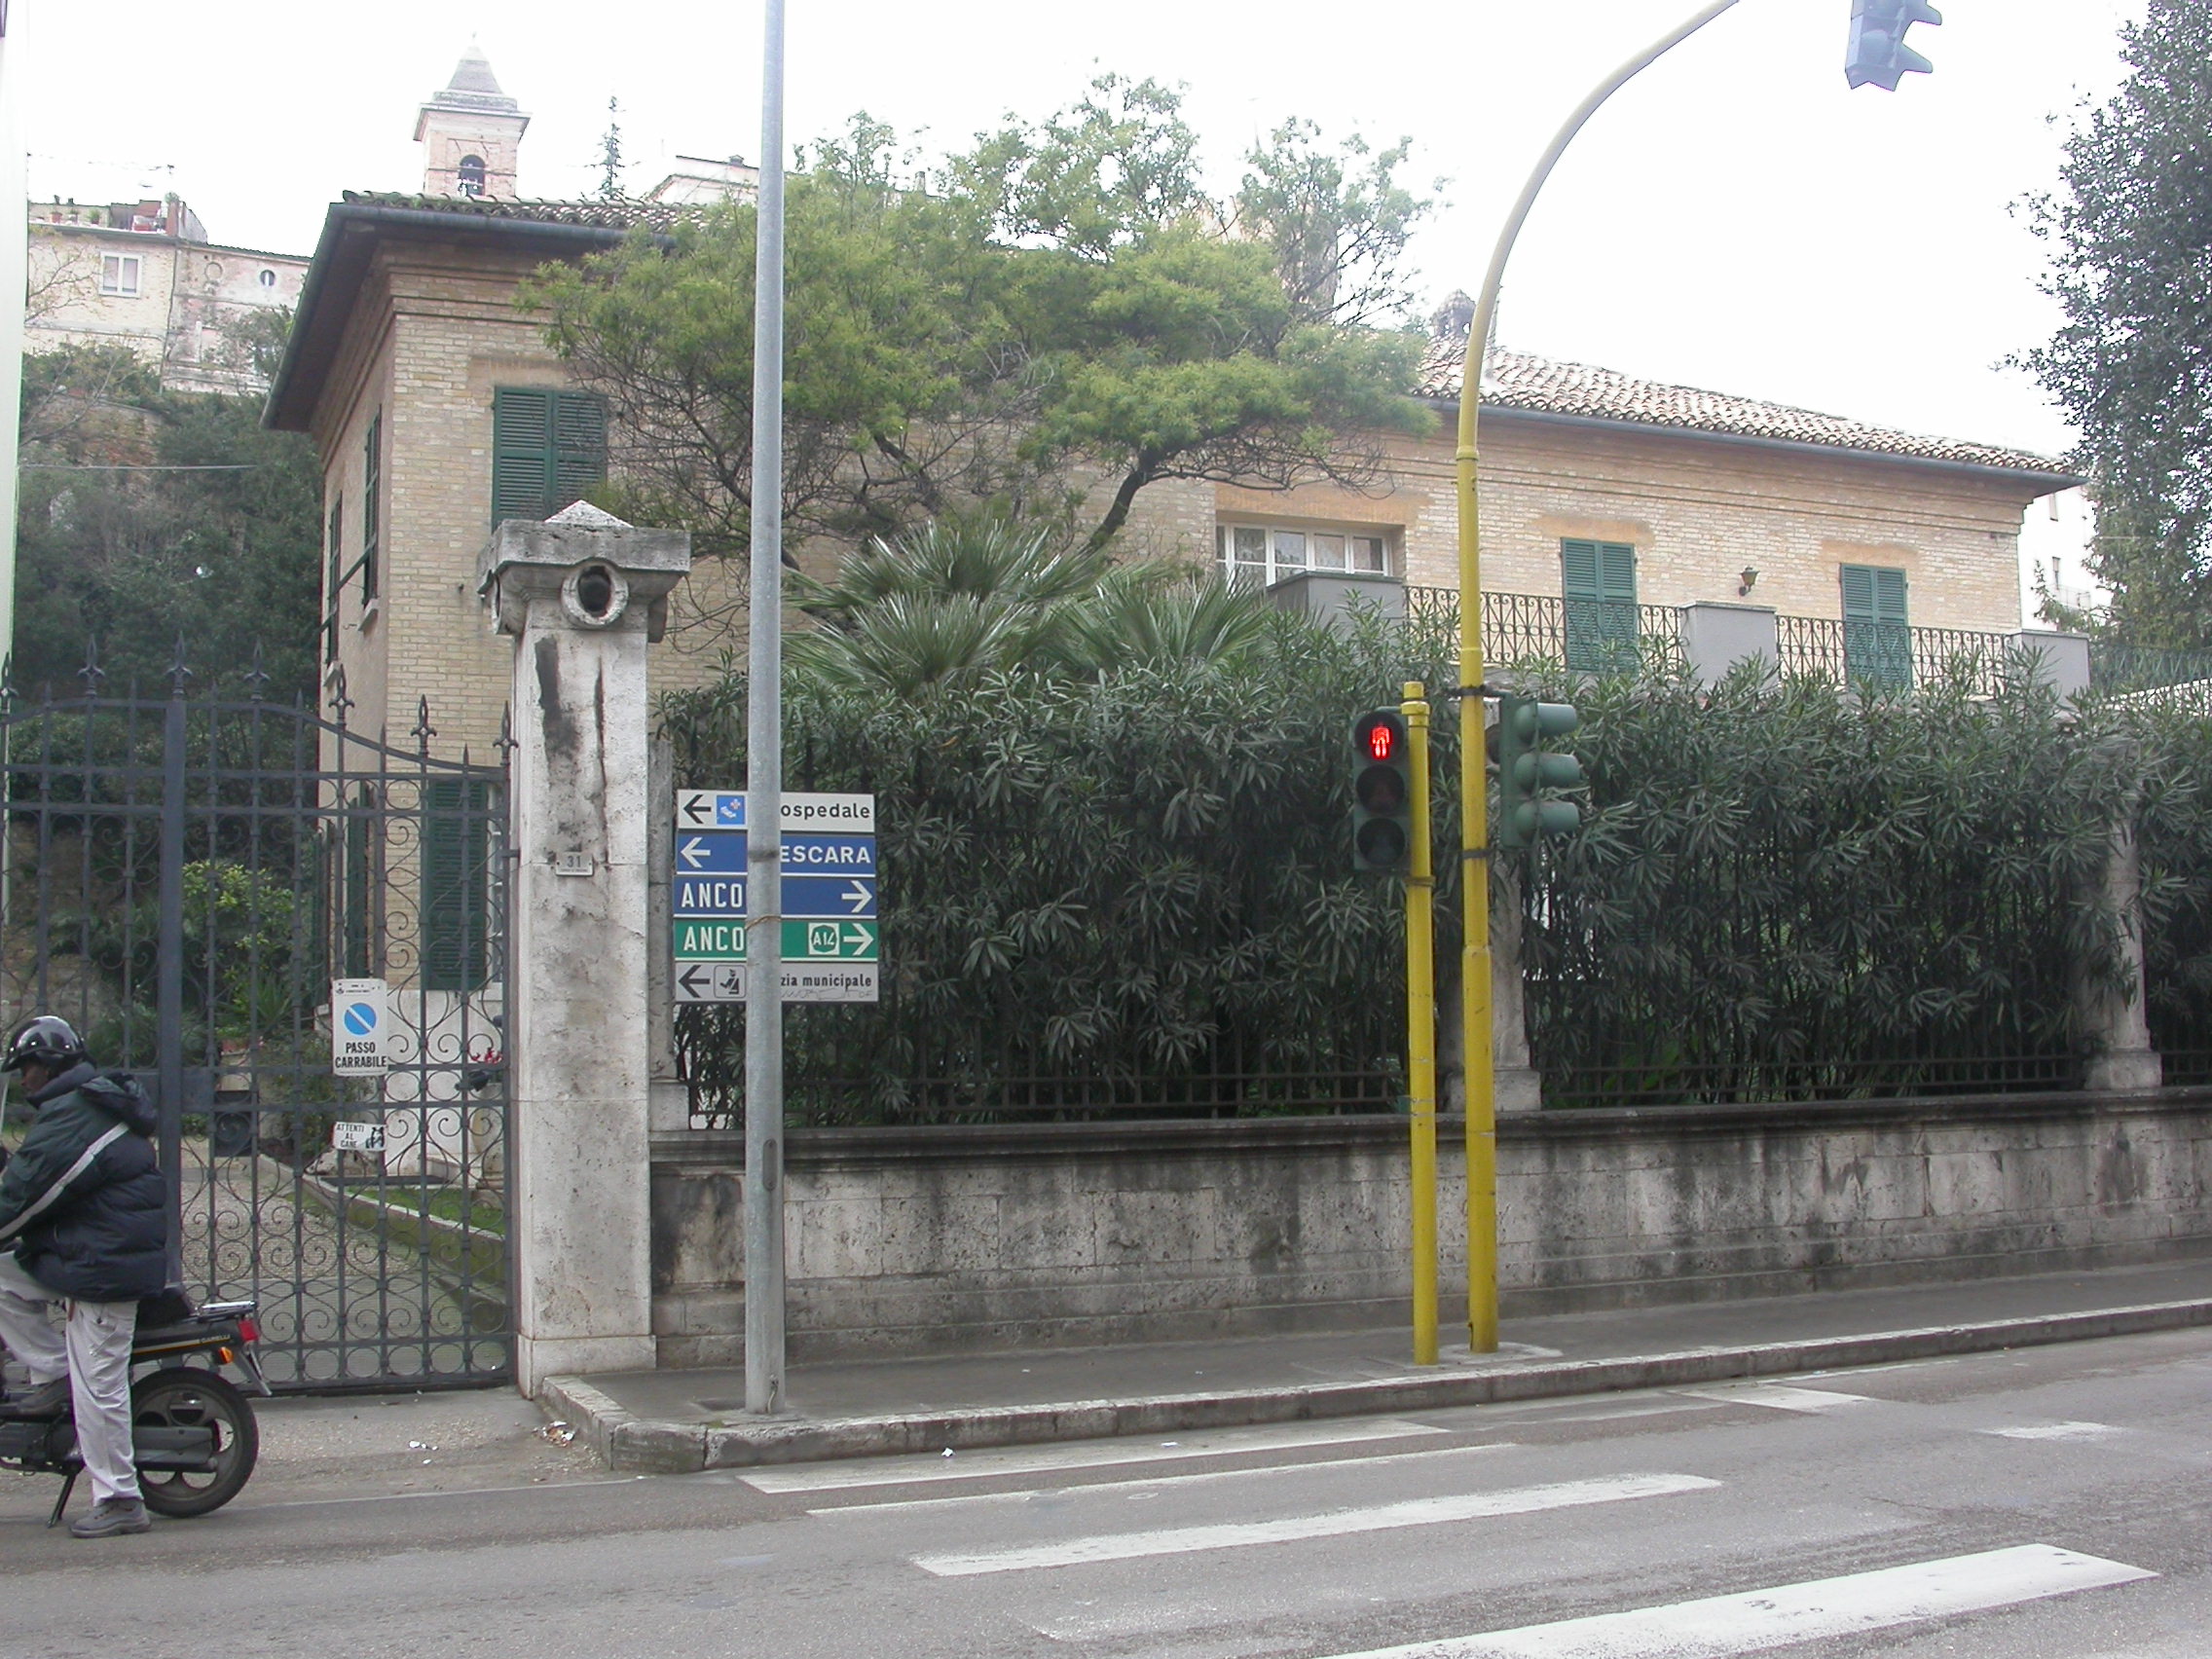 Villino in corso Mazzini (villino monofamiliare) - San Benedetto del Tronto (AP) 